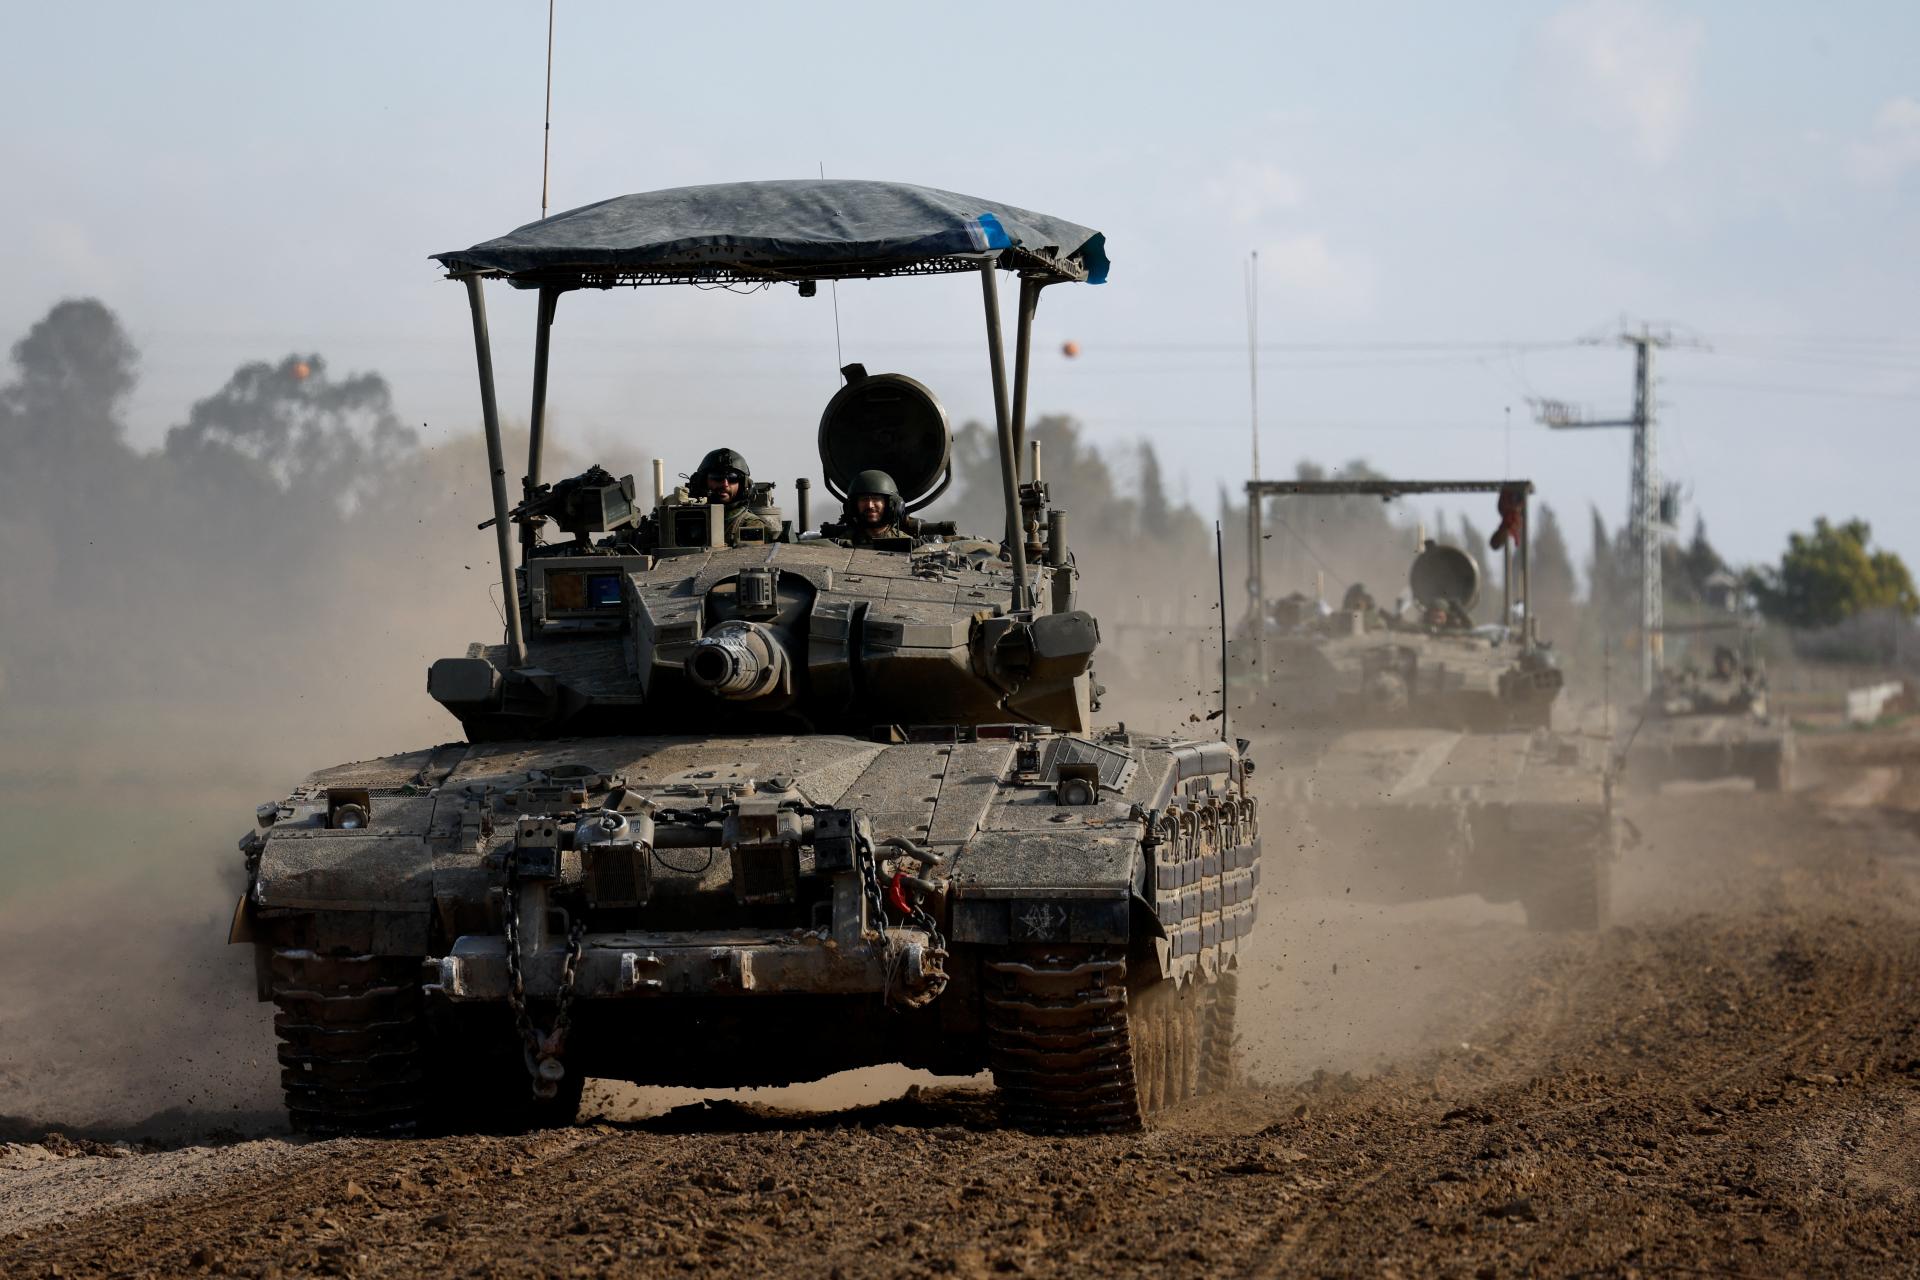 Súd OSN môže v piatok Izraelu nariadiť, aby zastavil operácie v Gaze. Juhoafrická republika ho viní z genocídy